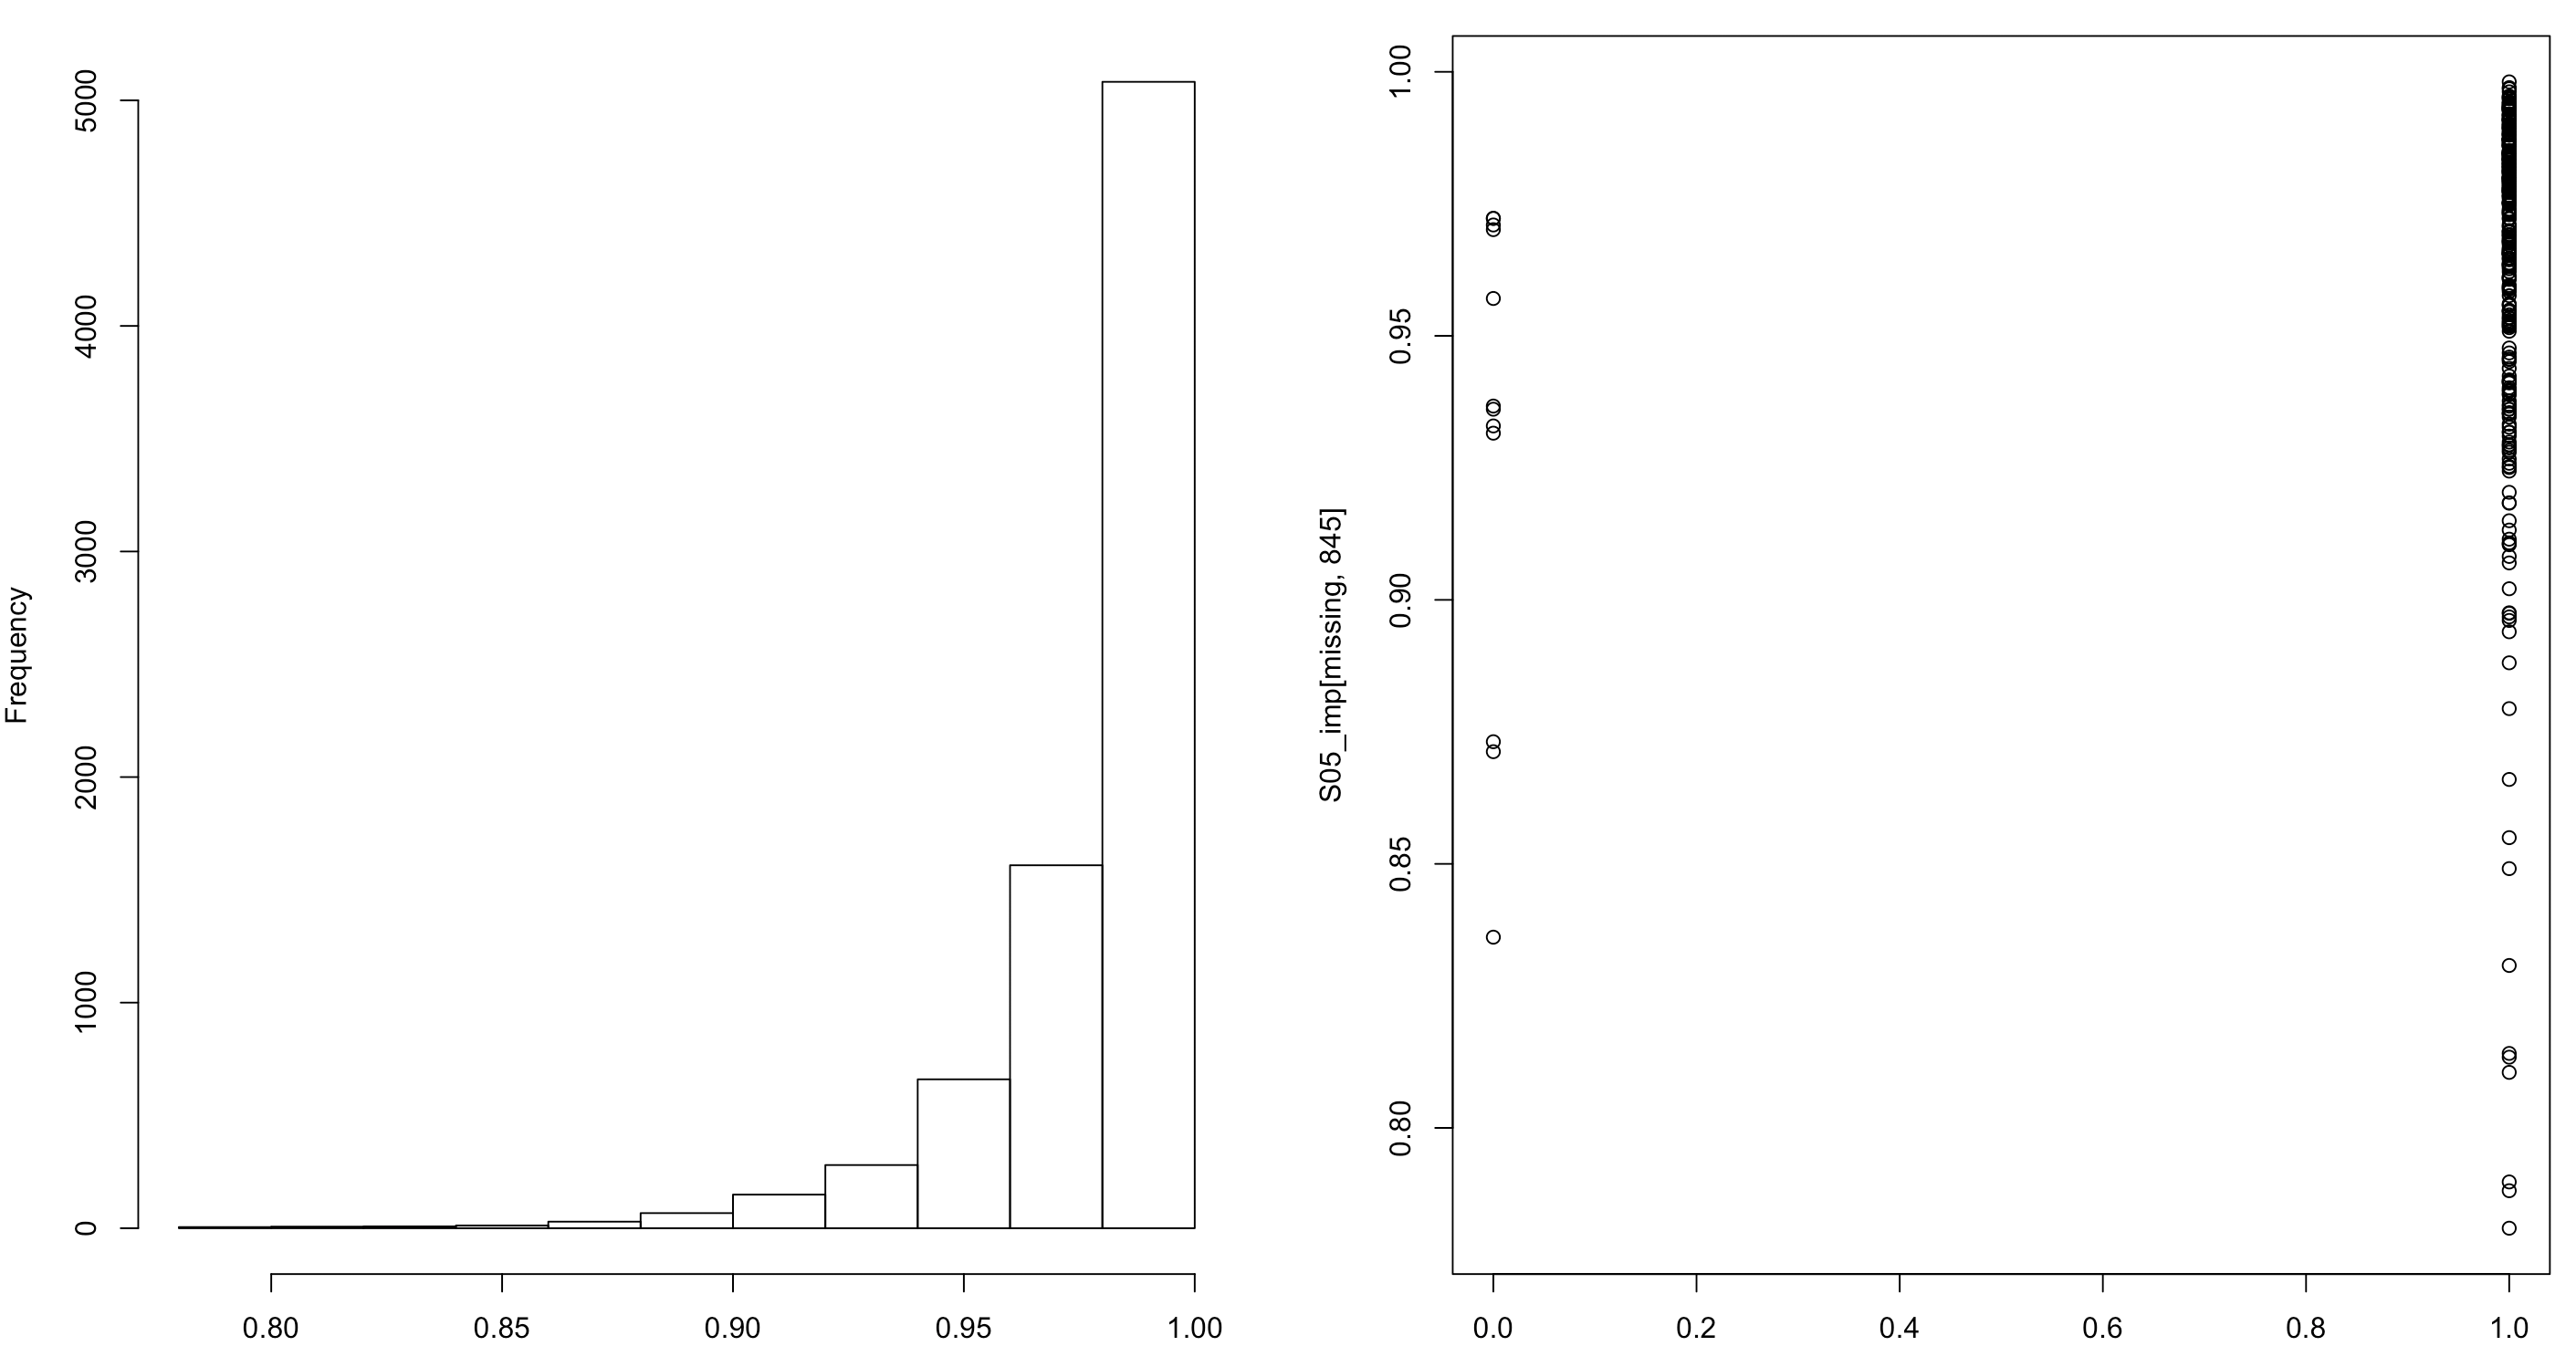 Distribución de las probabilidades estimadas de compra de arroz (izquierda) y valores imputados para los hogares con valores faltantes en el filtro (derecha).